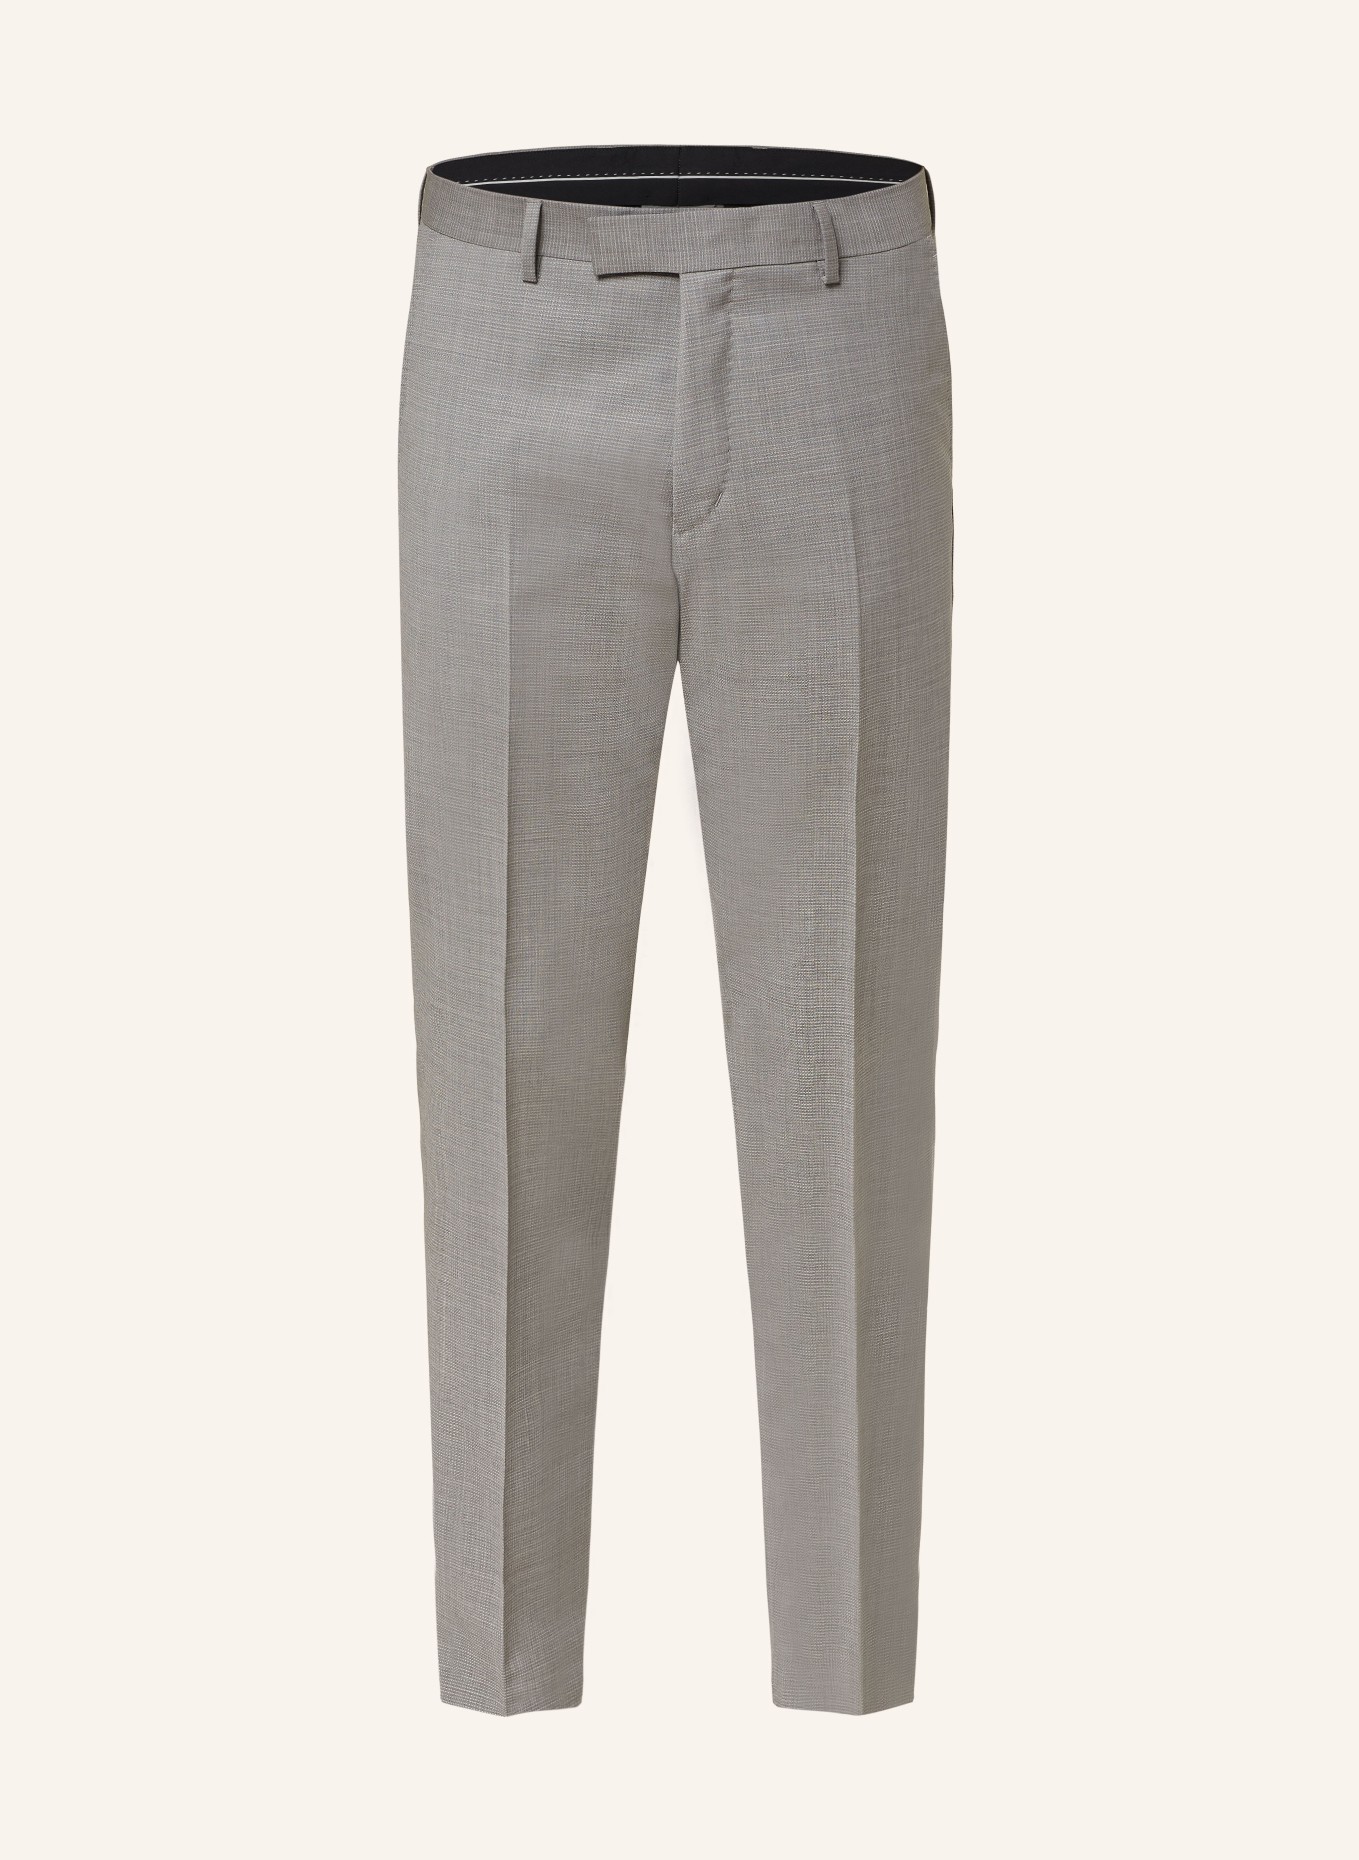 TIGER OF SWEDEN Suit trousers TENUTA slim fit, Color: M04 Light Grey Melange (Image 1)